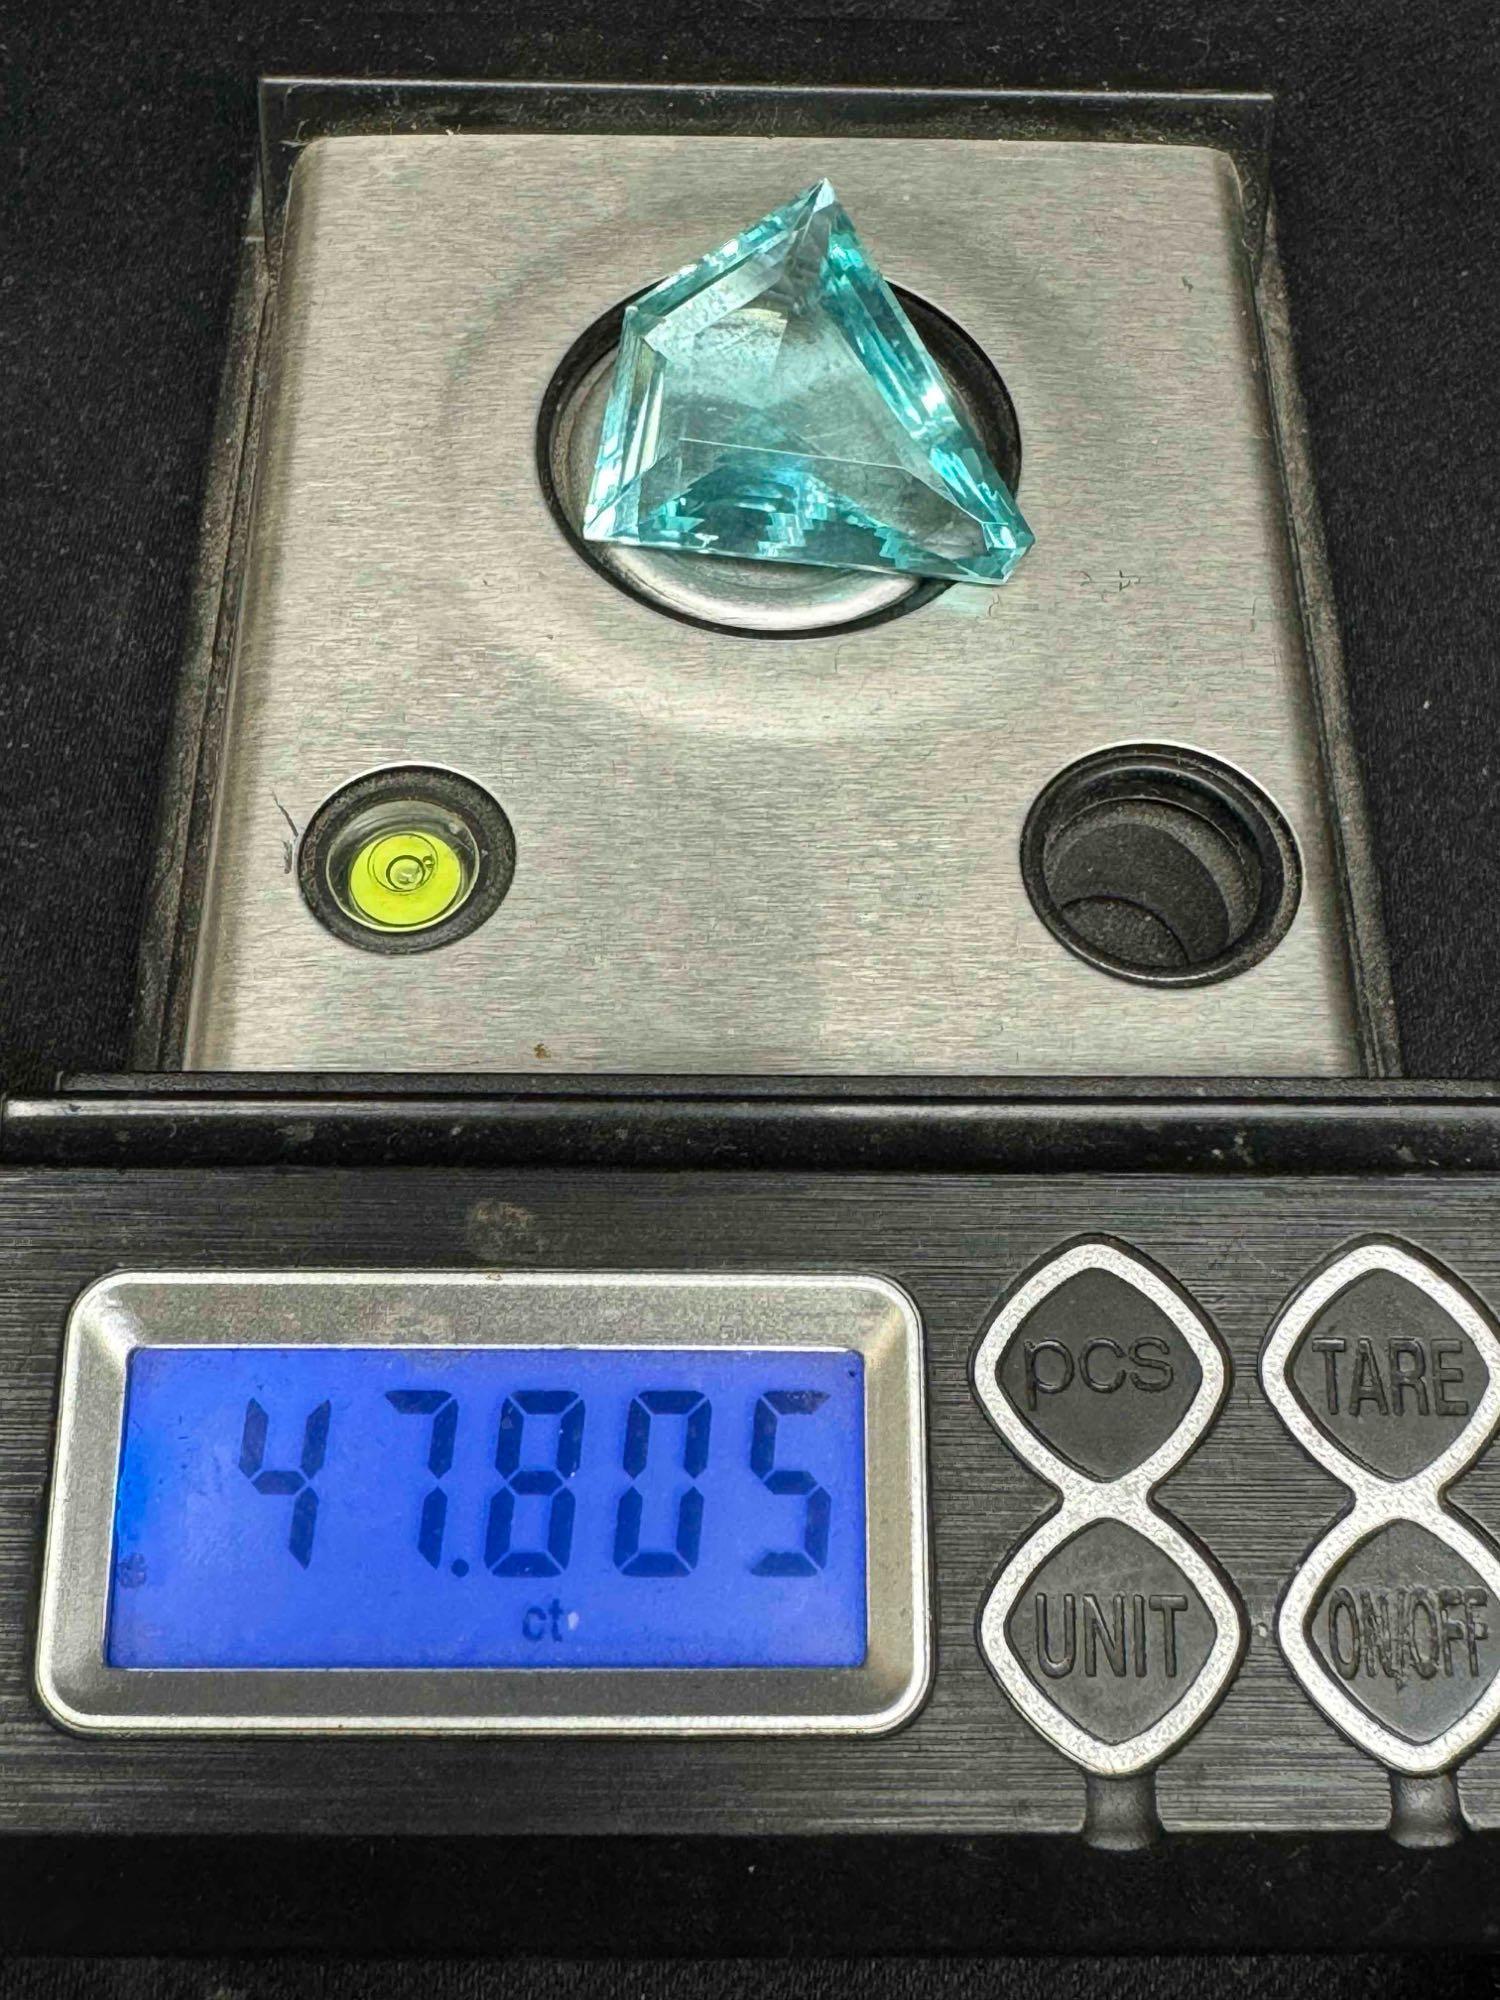 47.8ct Fancy Cut Aquamarine Gemstone